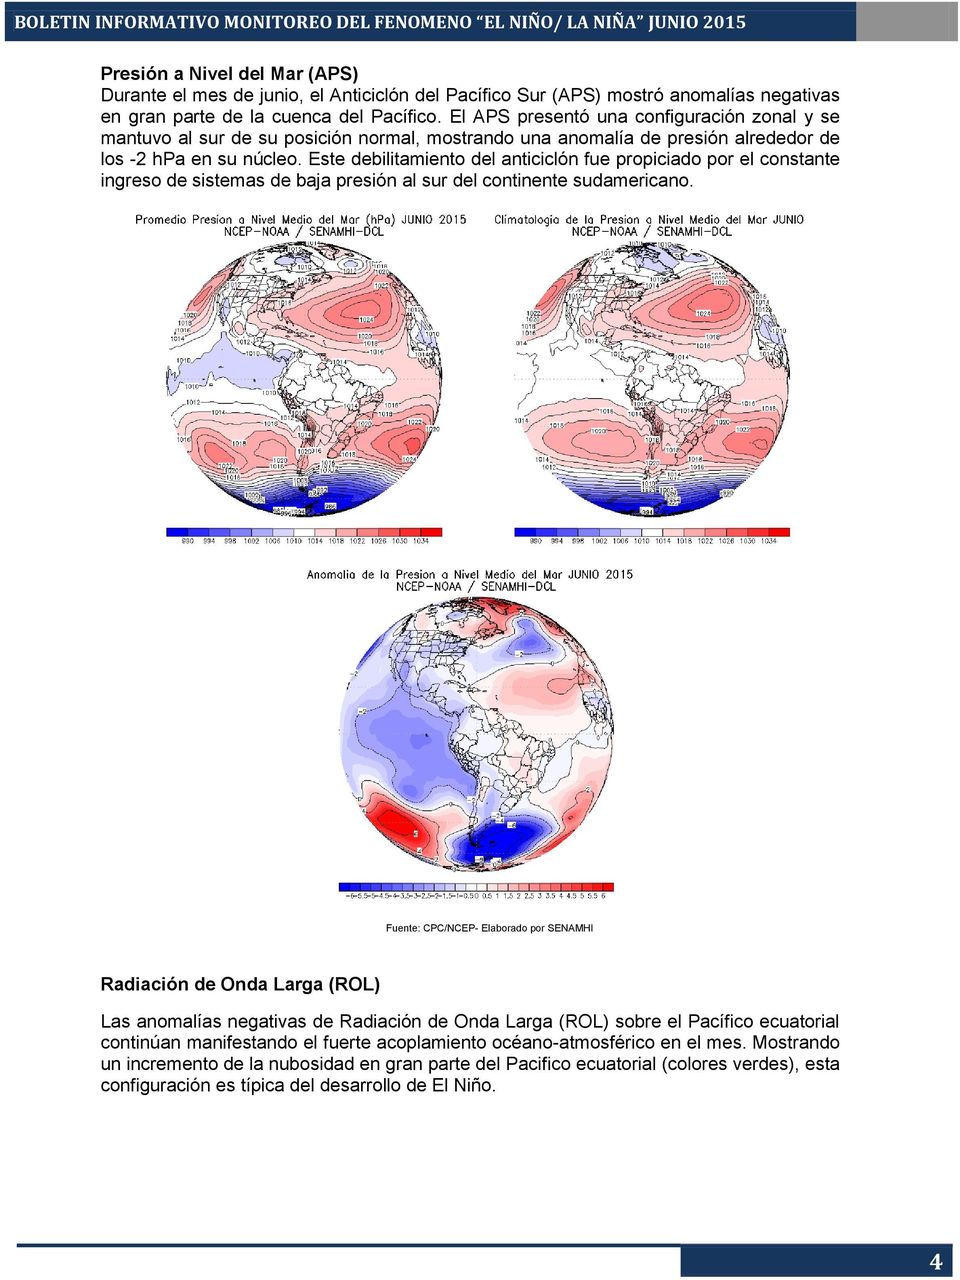 Este debilitamiento del anticiclón fue propiciado por el constante ingreso de sistemas de baja presión al sur del continente sudamericano.